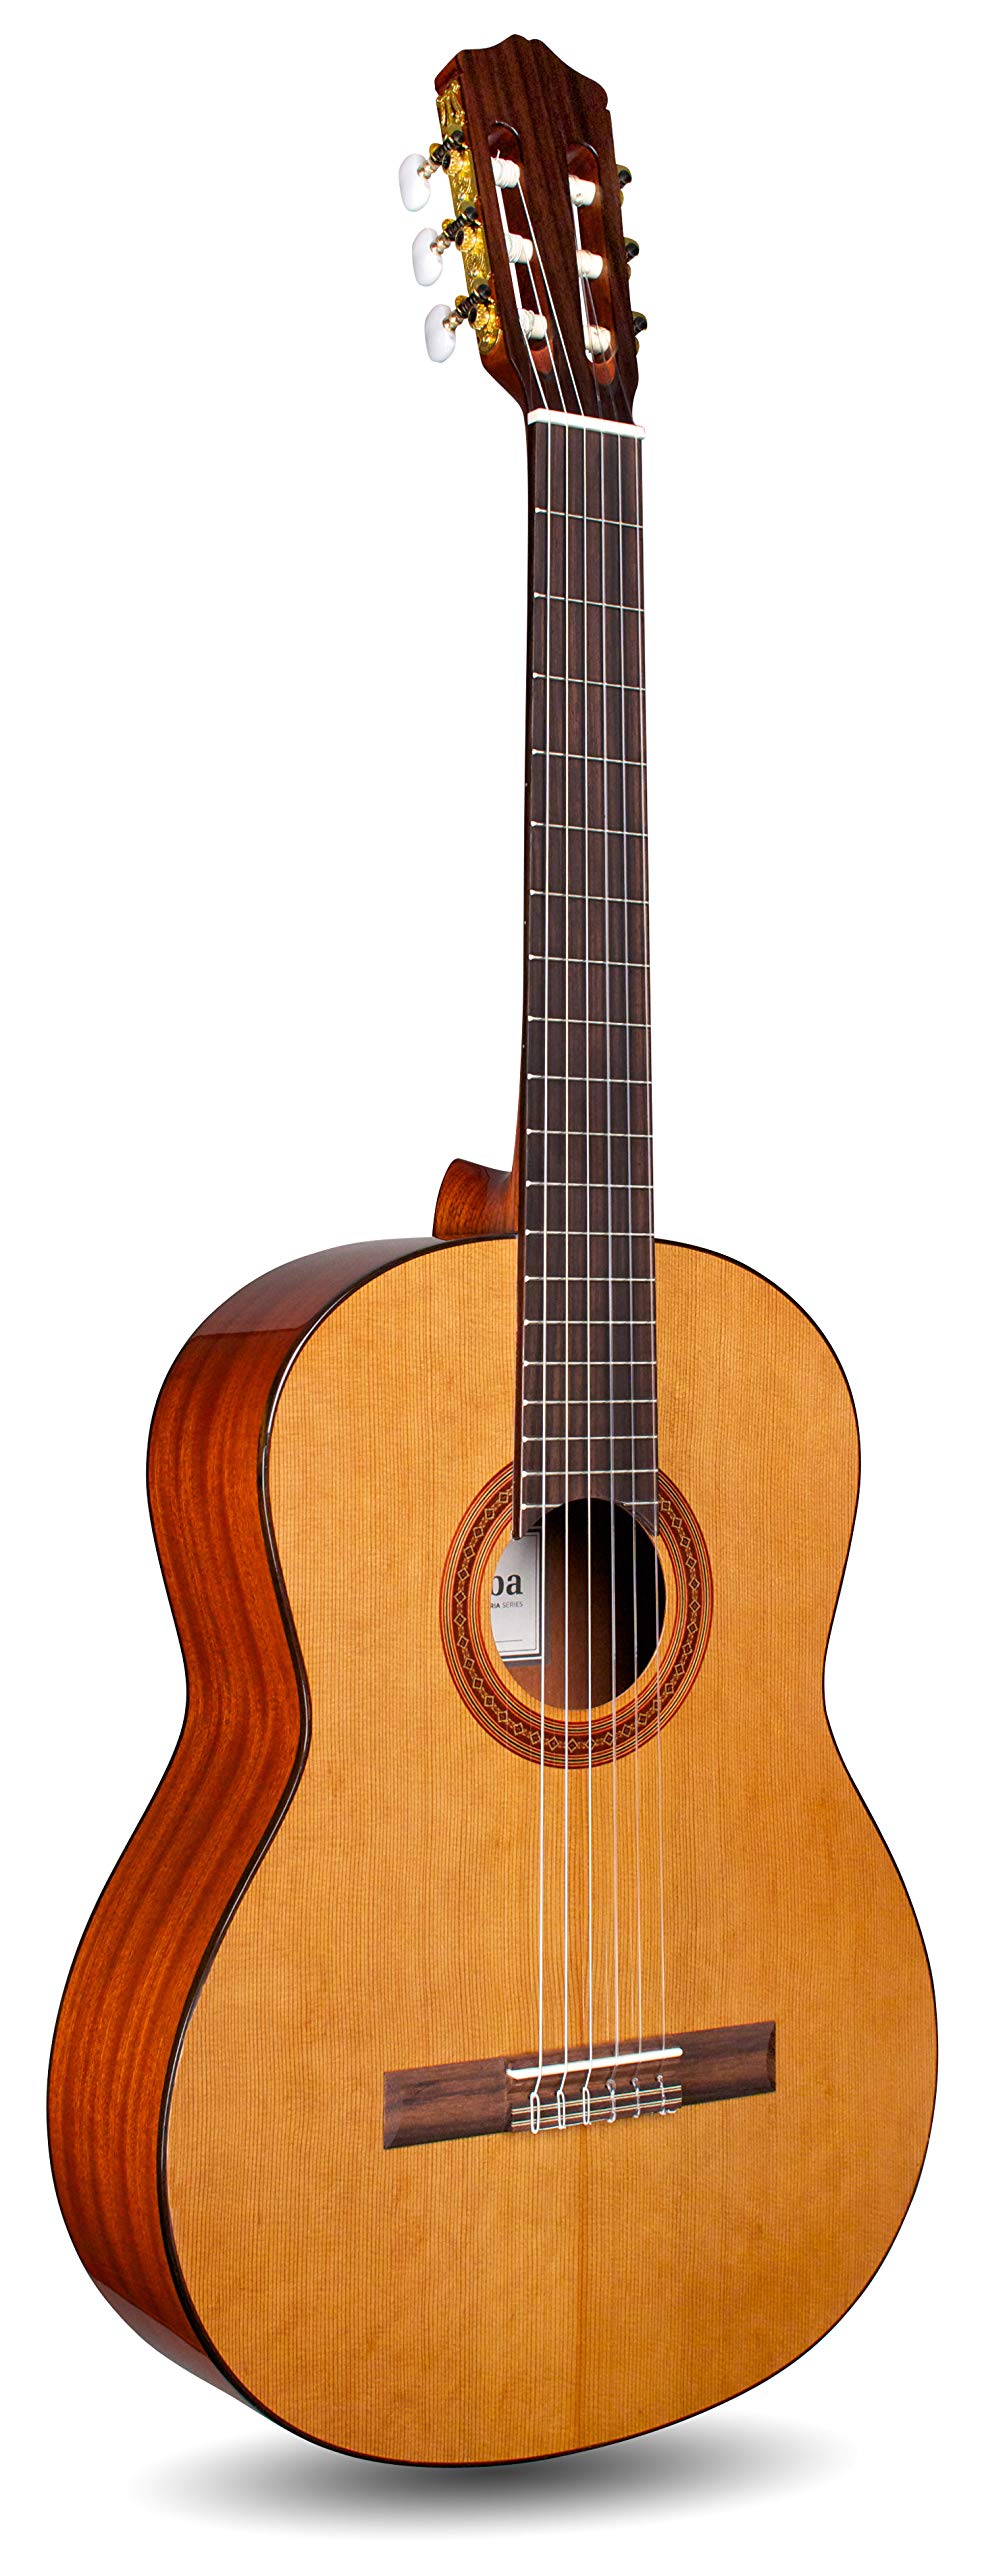 Cordoba Guitars C5 klassische akustische Nylonsaitengit...